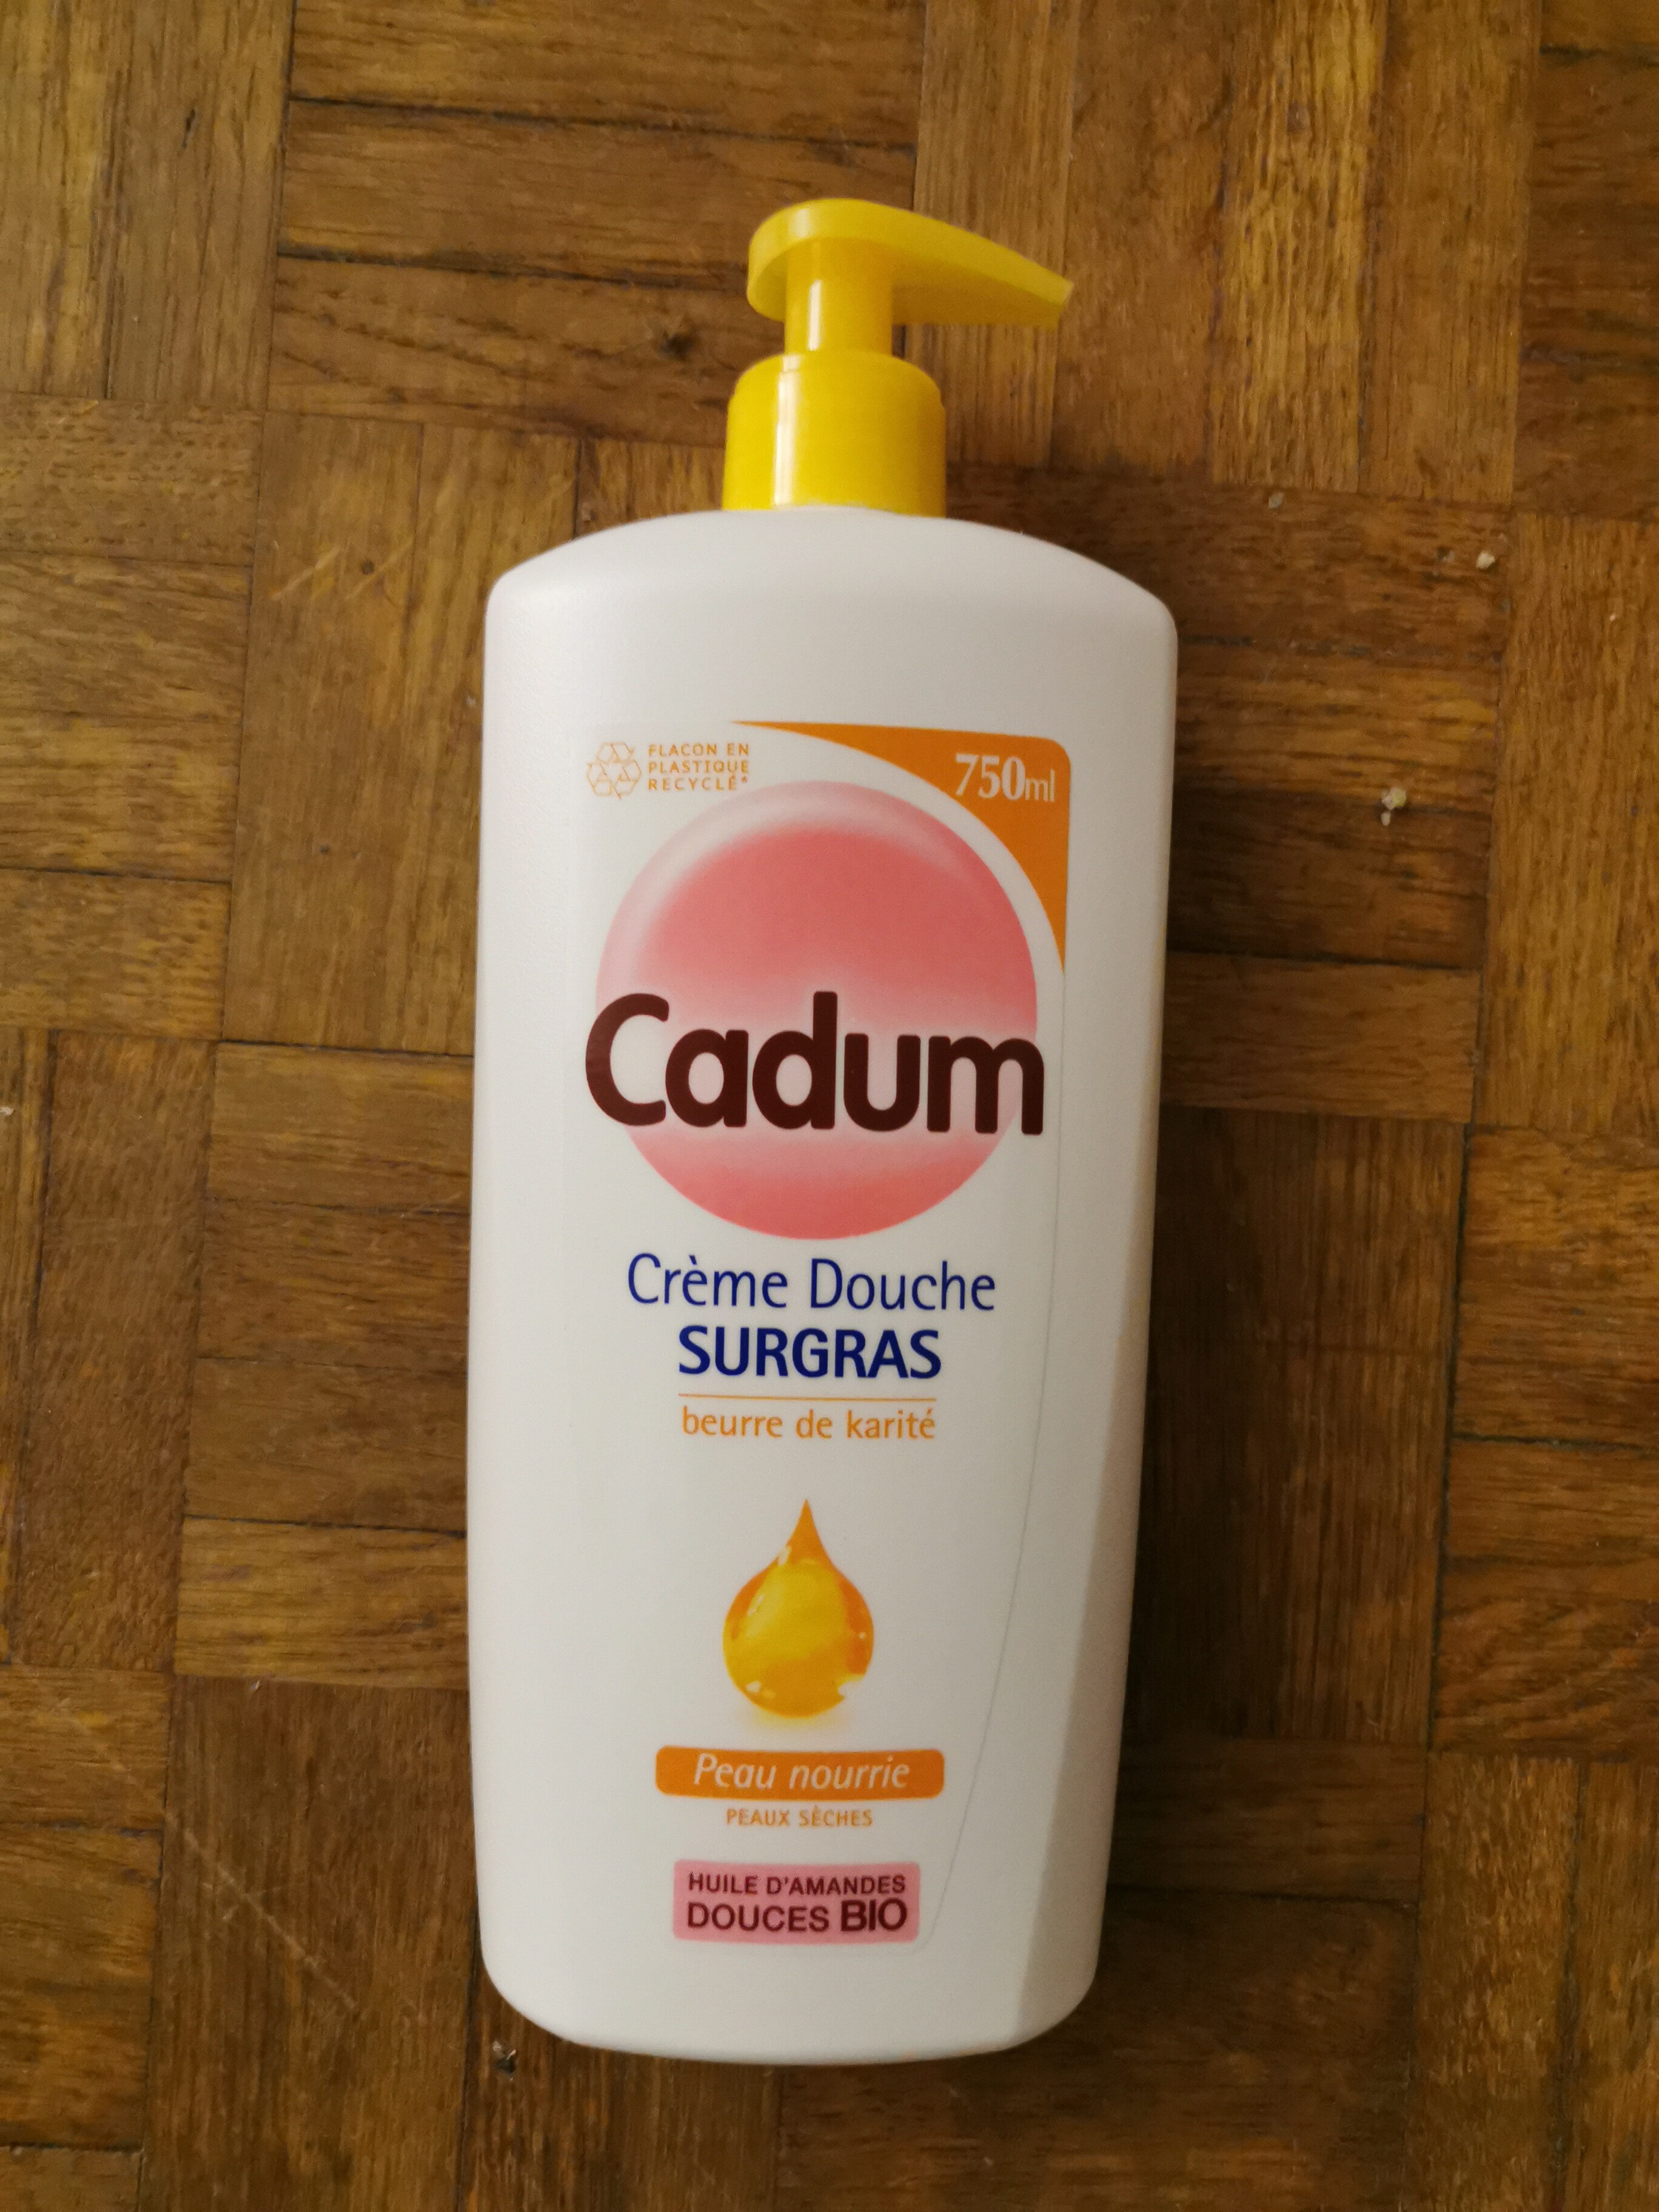 cadum crème douche sugras - Product - fr